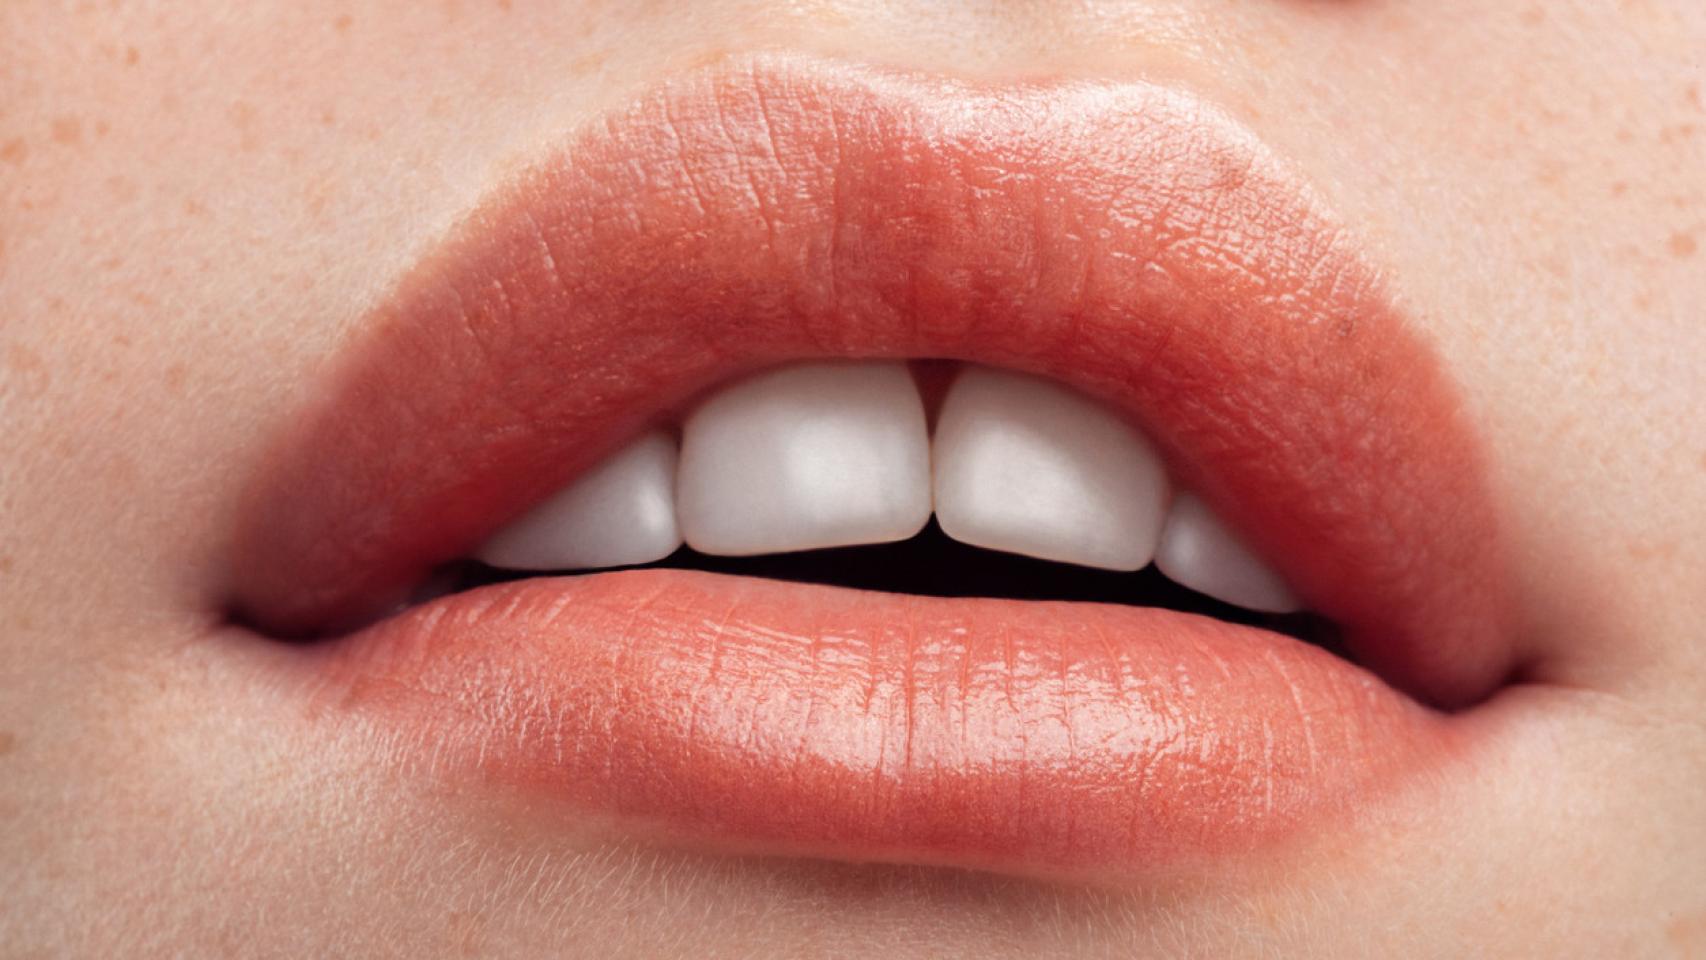 Luce unos labios con más volumen gracias a la técnica 'gym lips